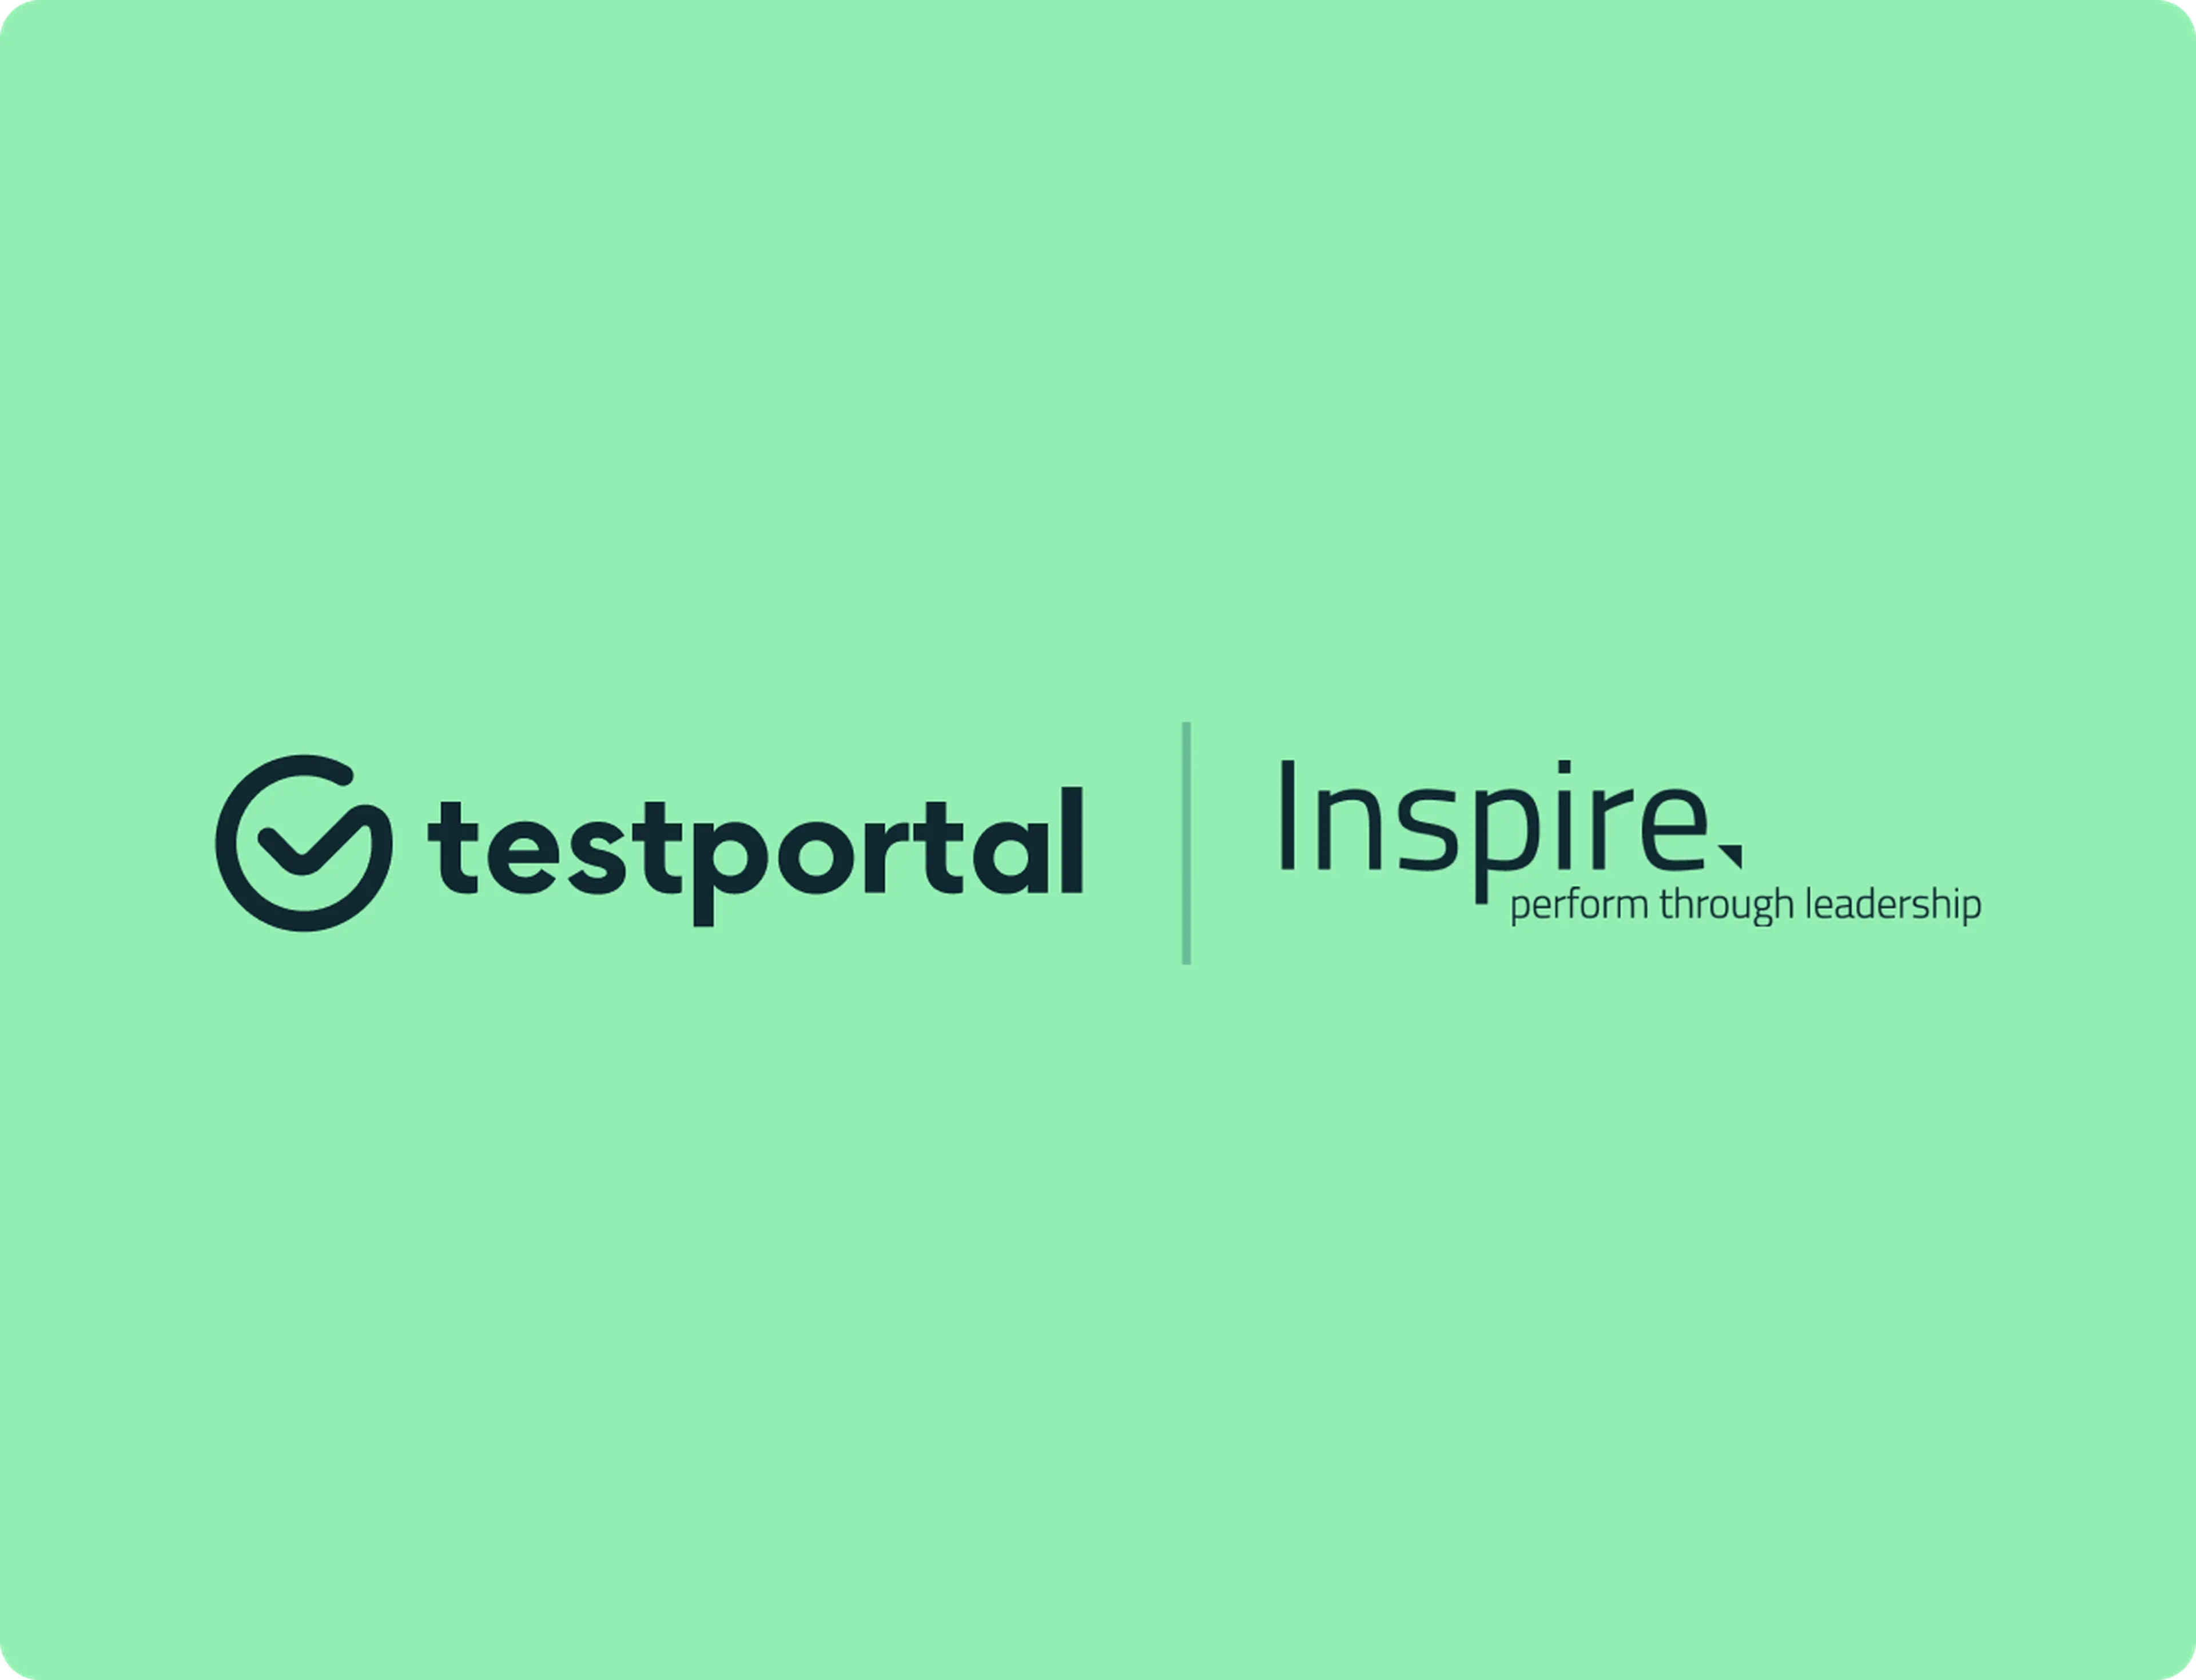 Testportal and Inspire Leadership logos